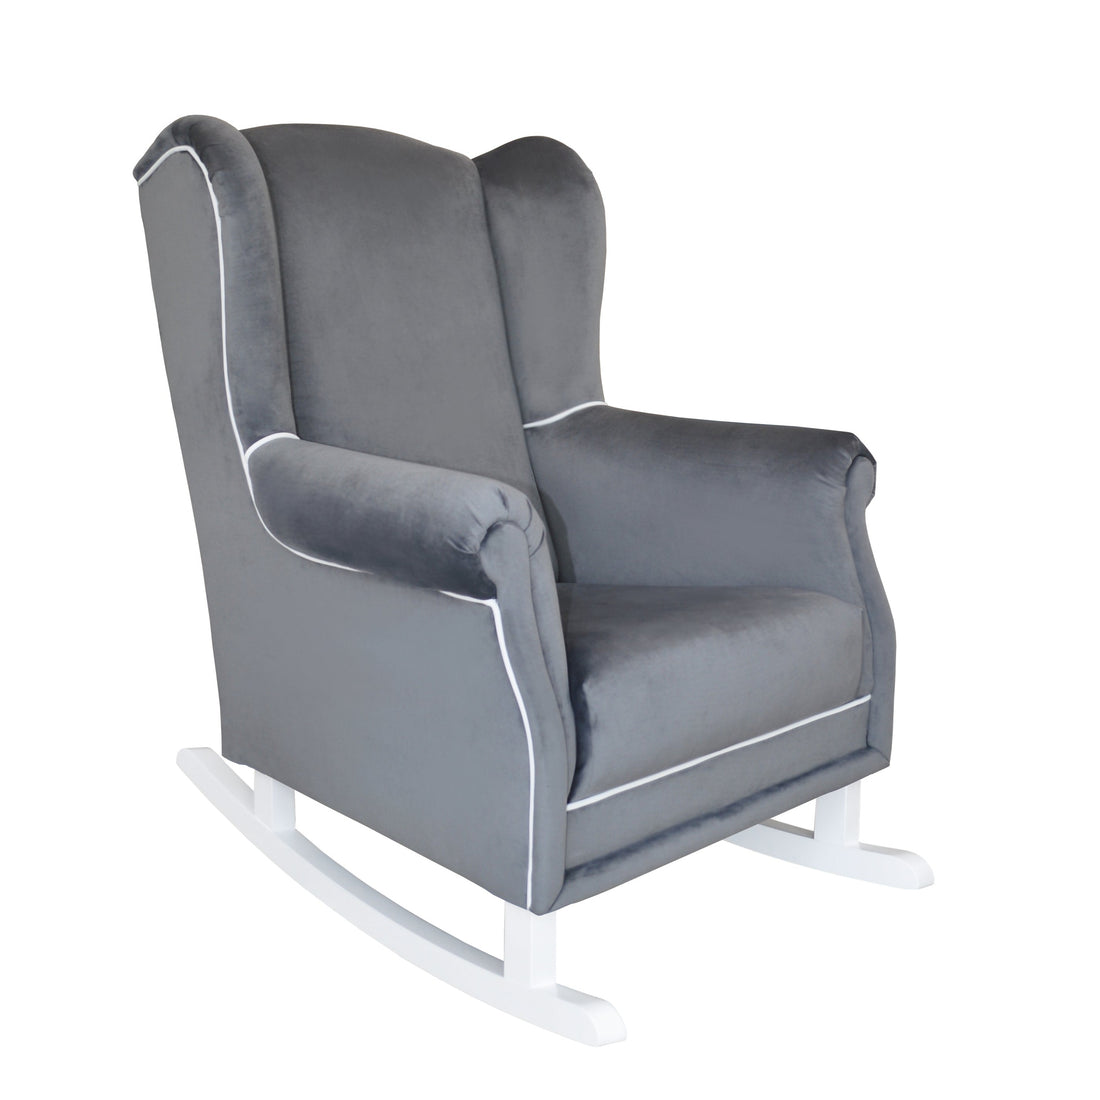 Rocking nursing chair PRESTIGE dark-graphite | handcrafted rocking nursing chair | luxury baby furniture | relaxing nursing rocking chair